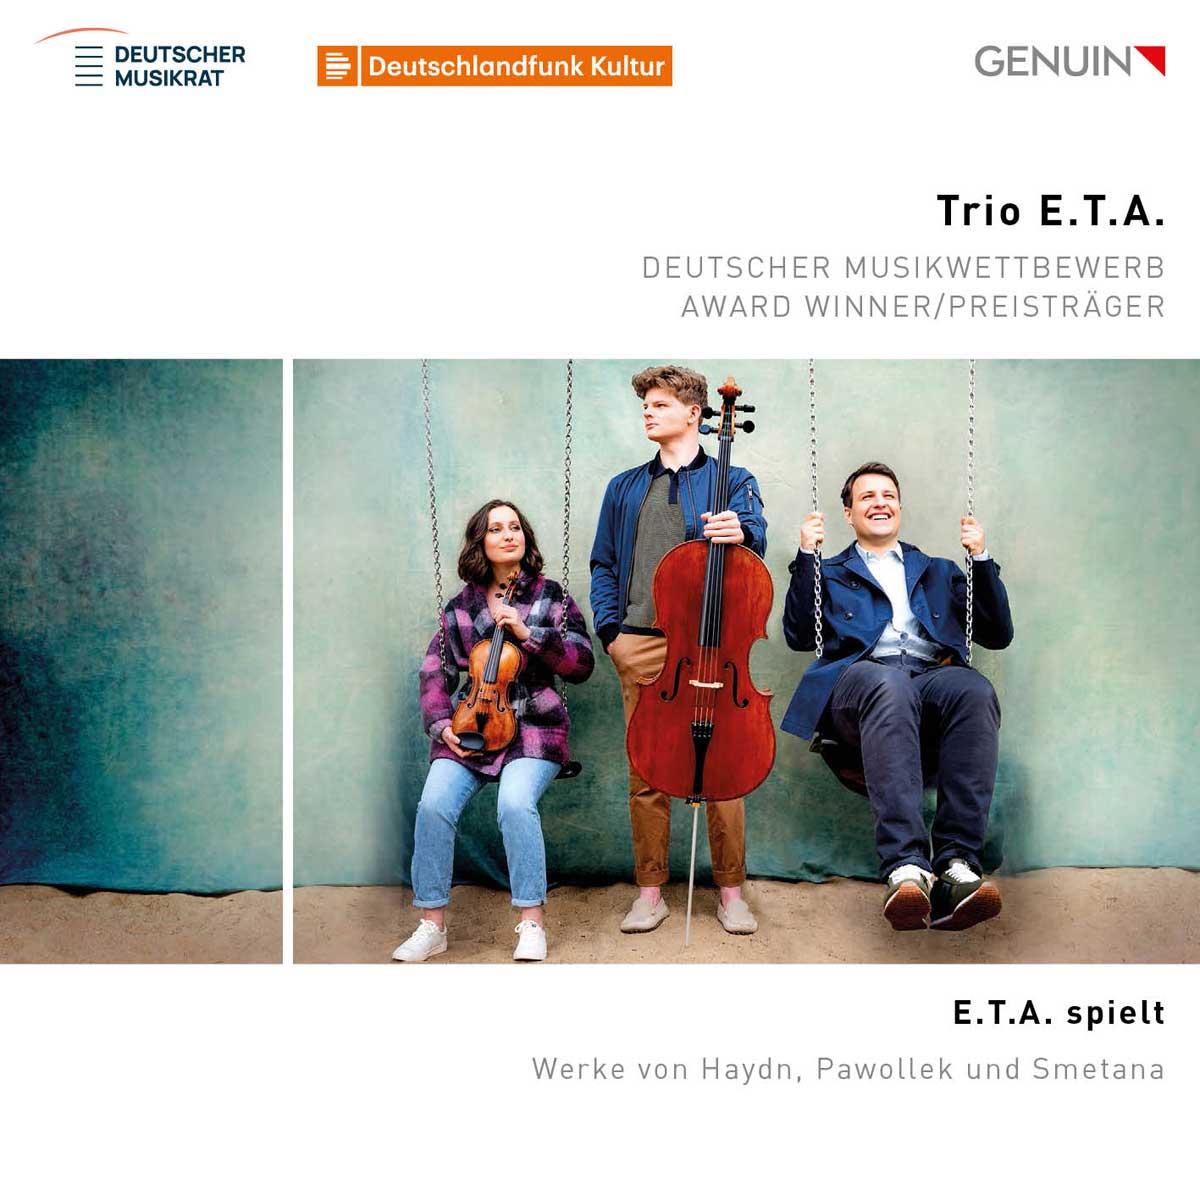 CD album cover 'E.T.A. spielt' (GEN 23816) with Trio E.T.A.